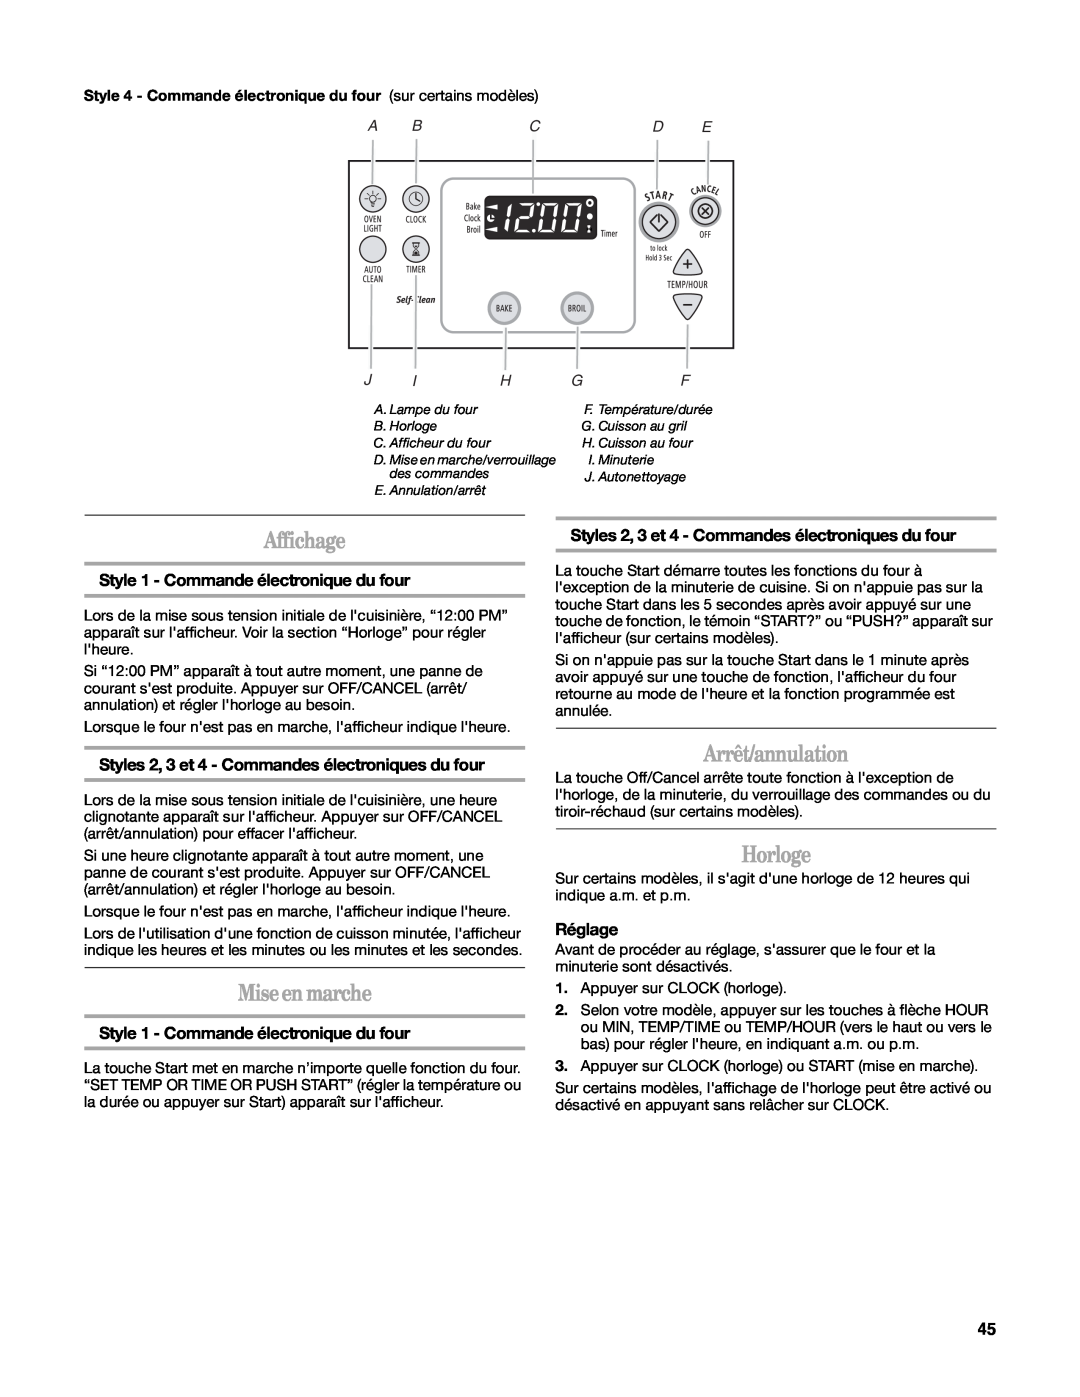 Whirlpool W10162205A manual Affichage, Mise en marche, Arrêt/annulation, Horloge, Style 1 - Commande électronique du four 